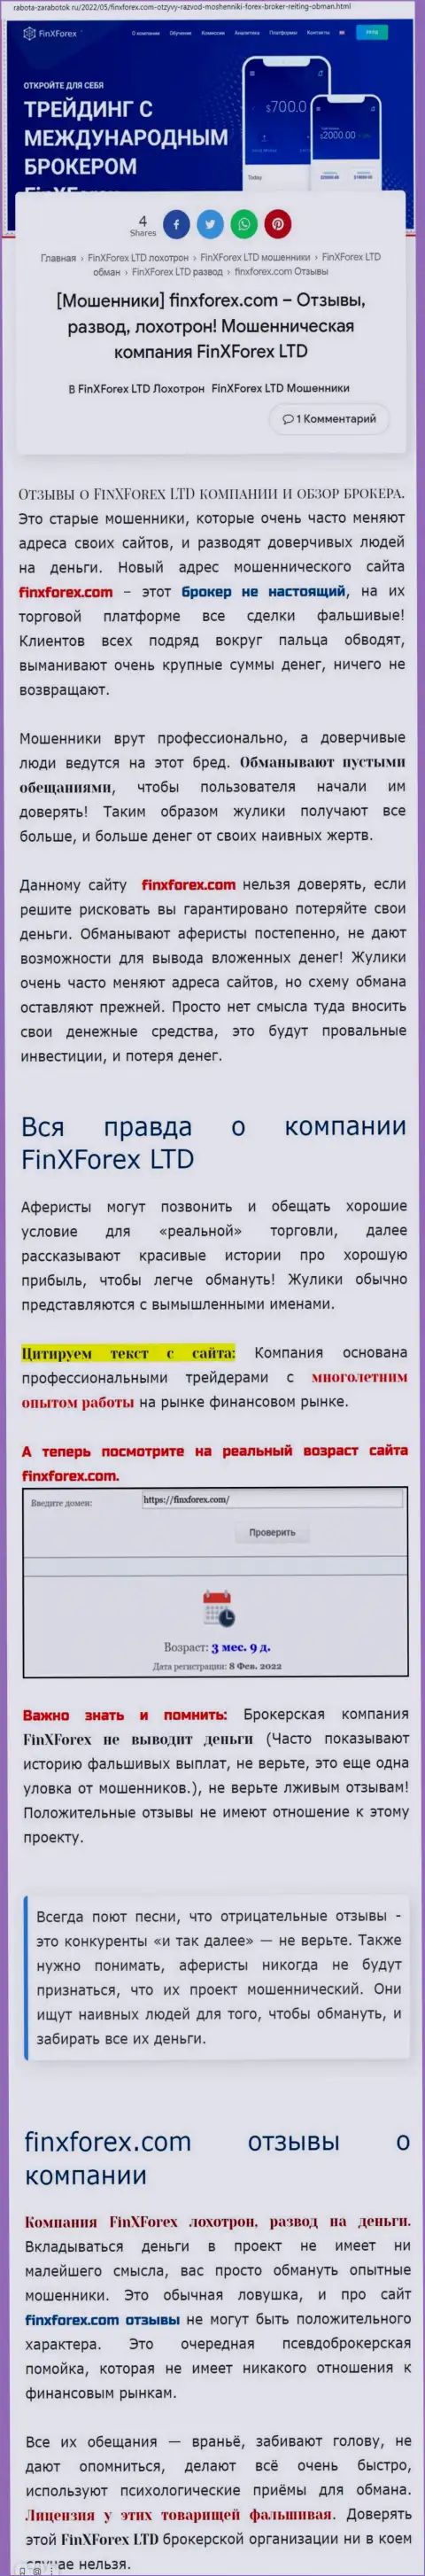 Автор публикации о FinXForex заявляет, что в организации FinXForex Com разводят